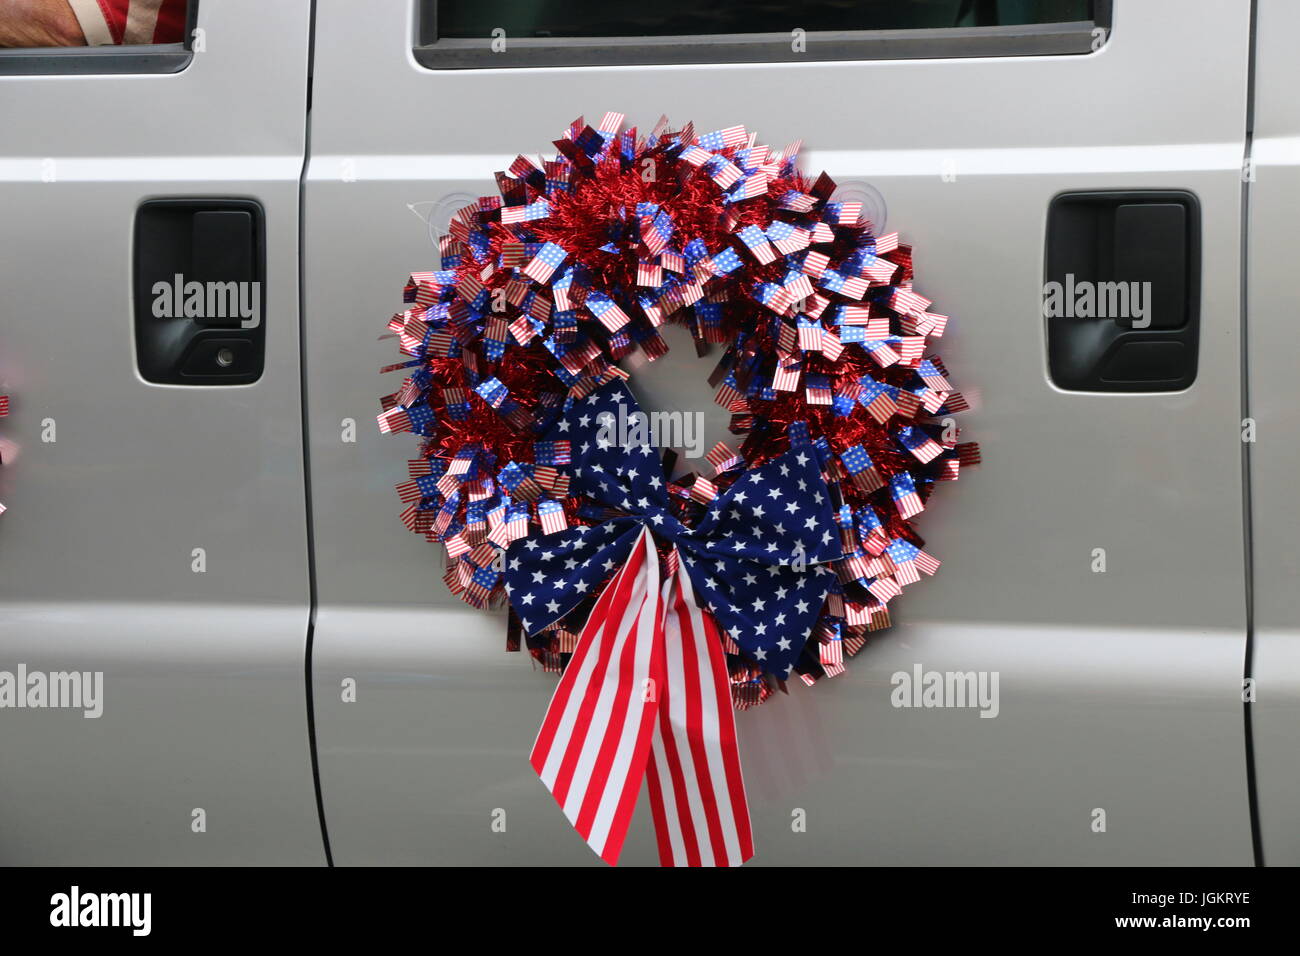 Guirlande drapeau américain sur voiture en parade. Banque D'Images